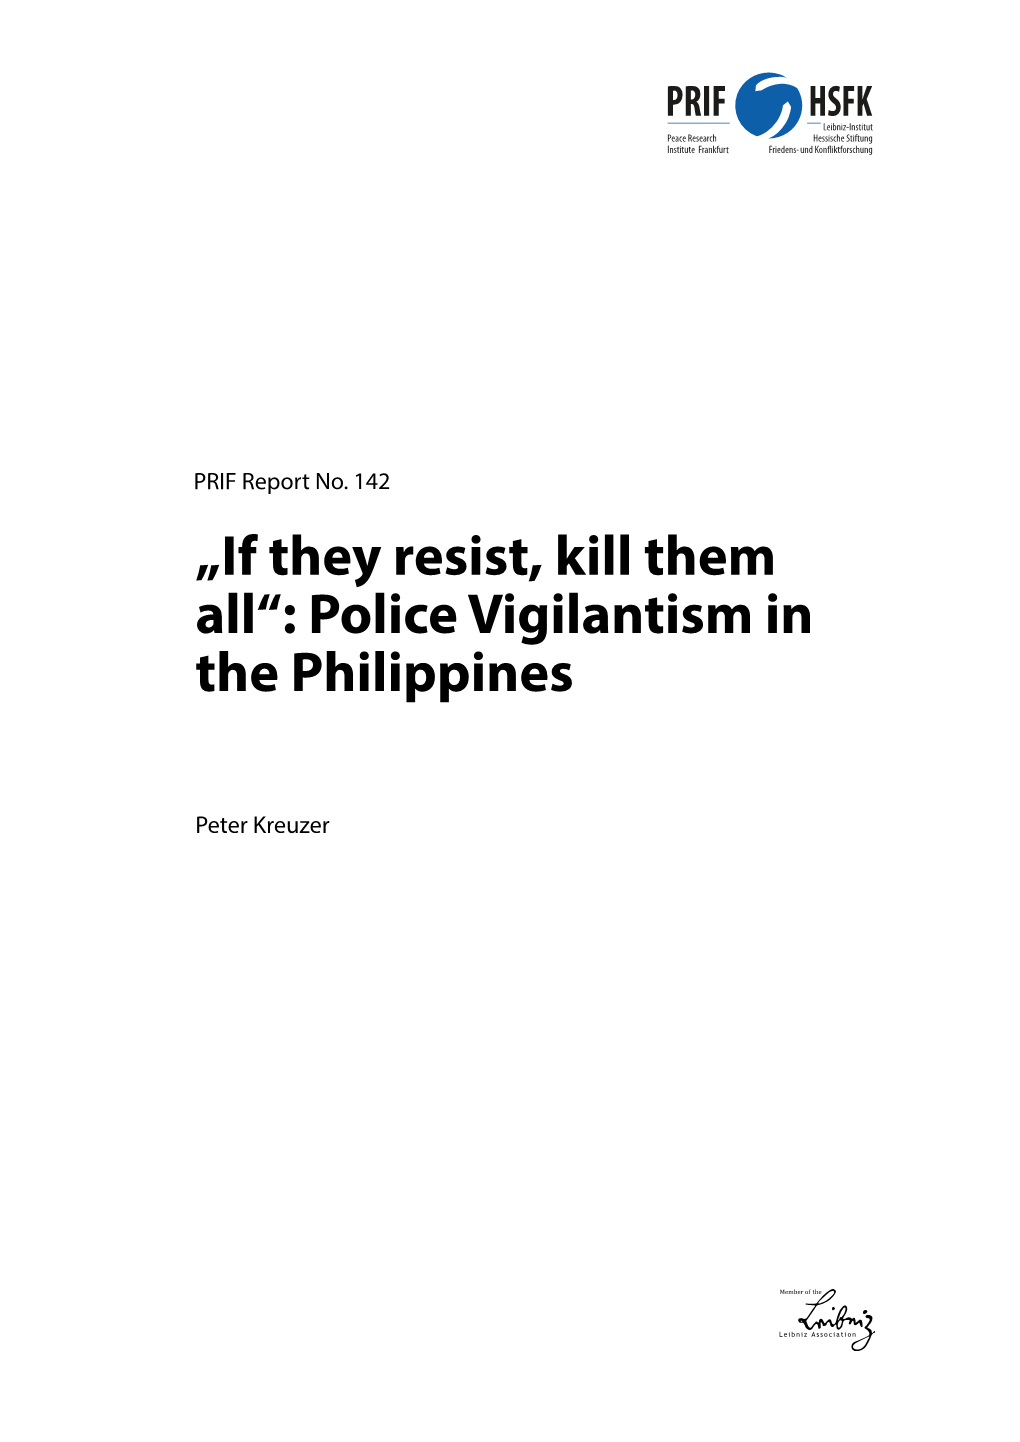 Police Vigilantism in the Philippines